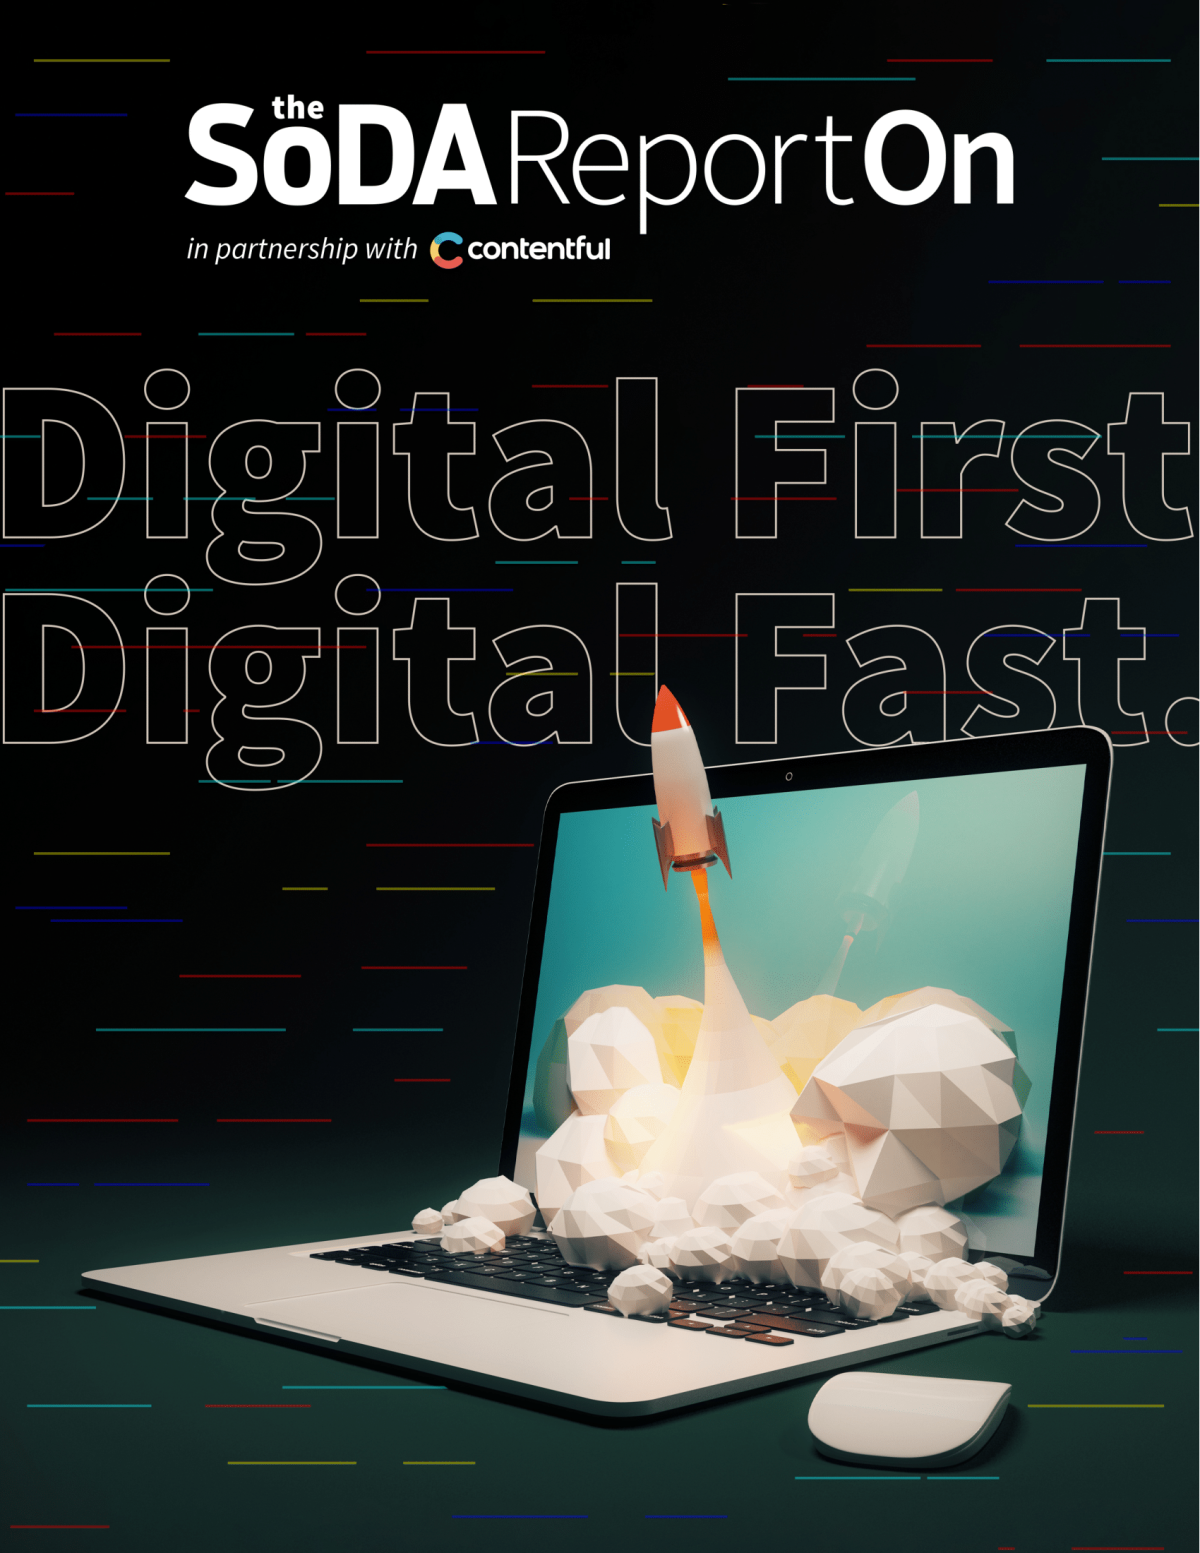 SoDa: digital-first, digital-fast